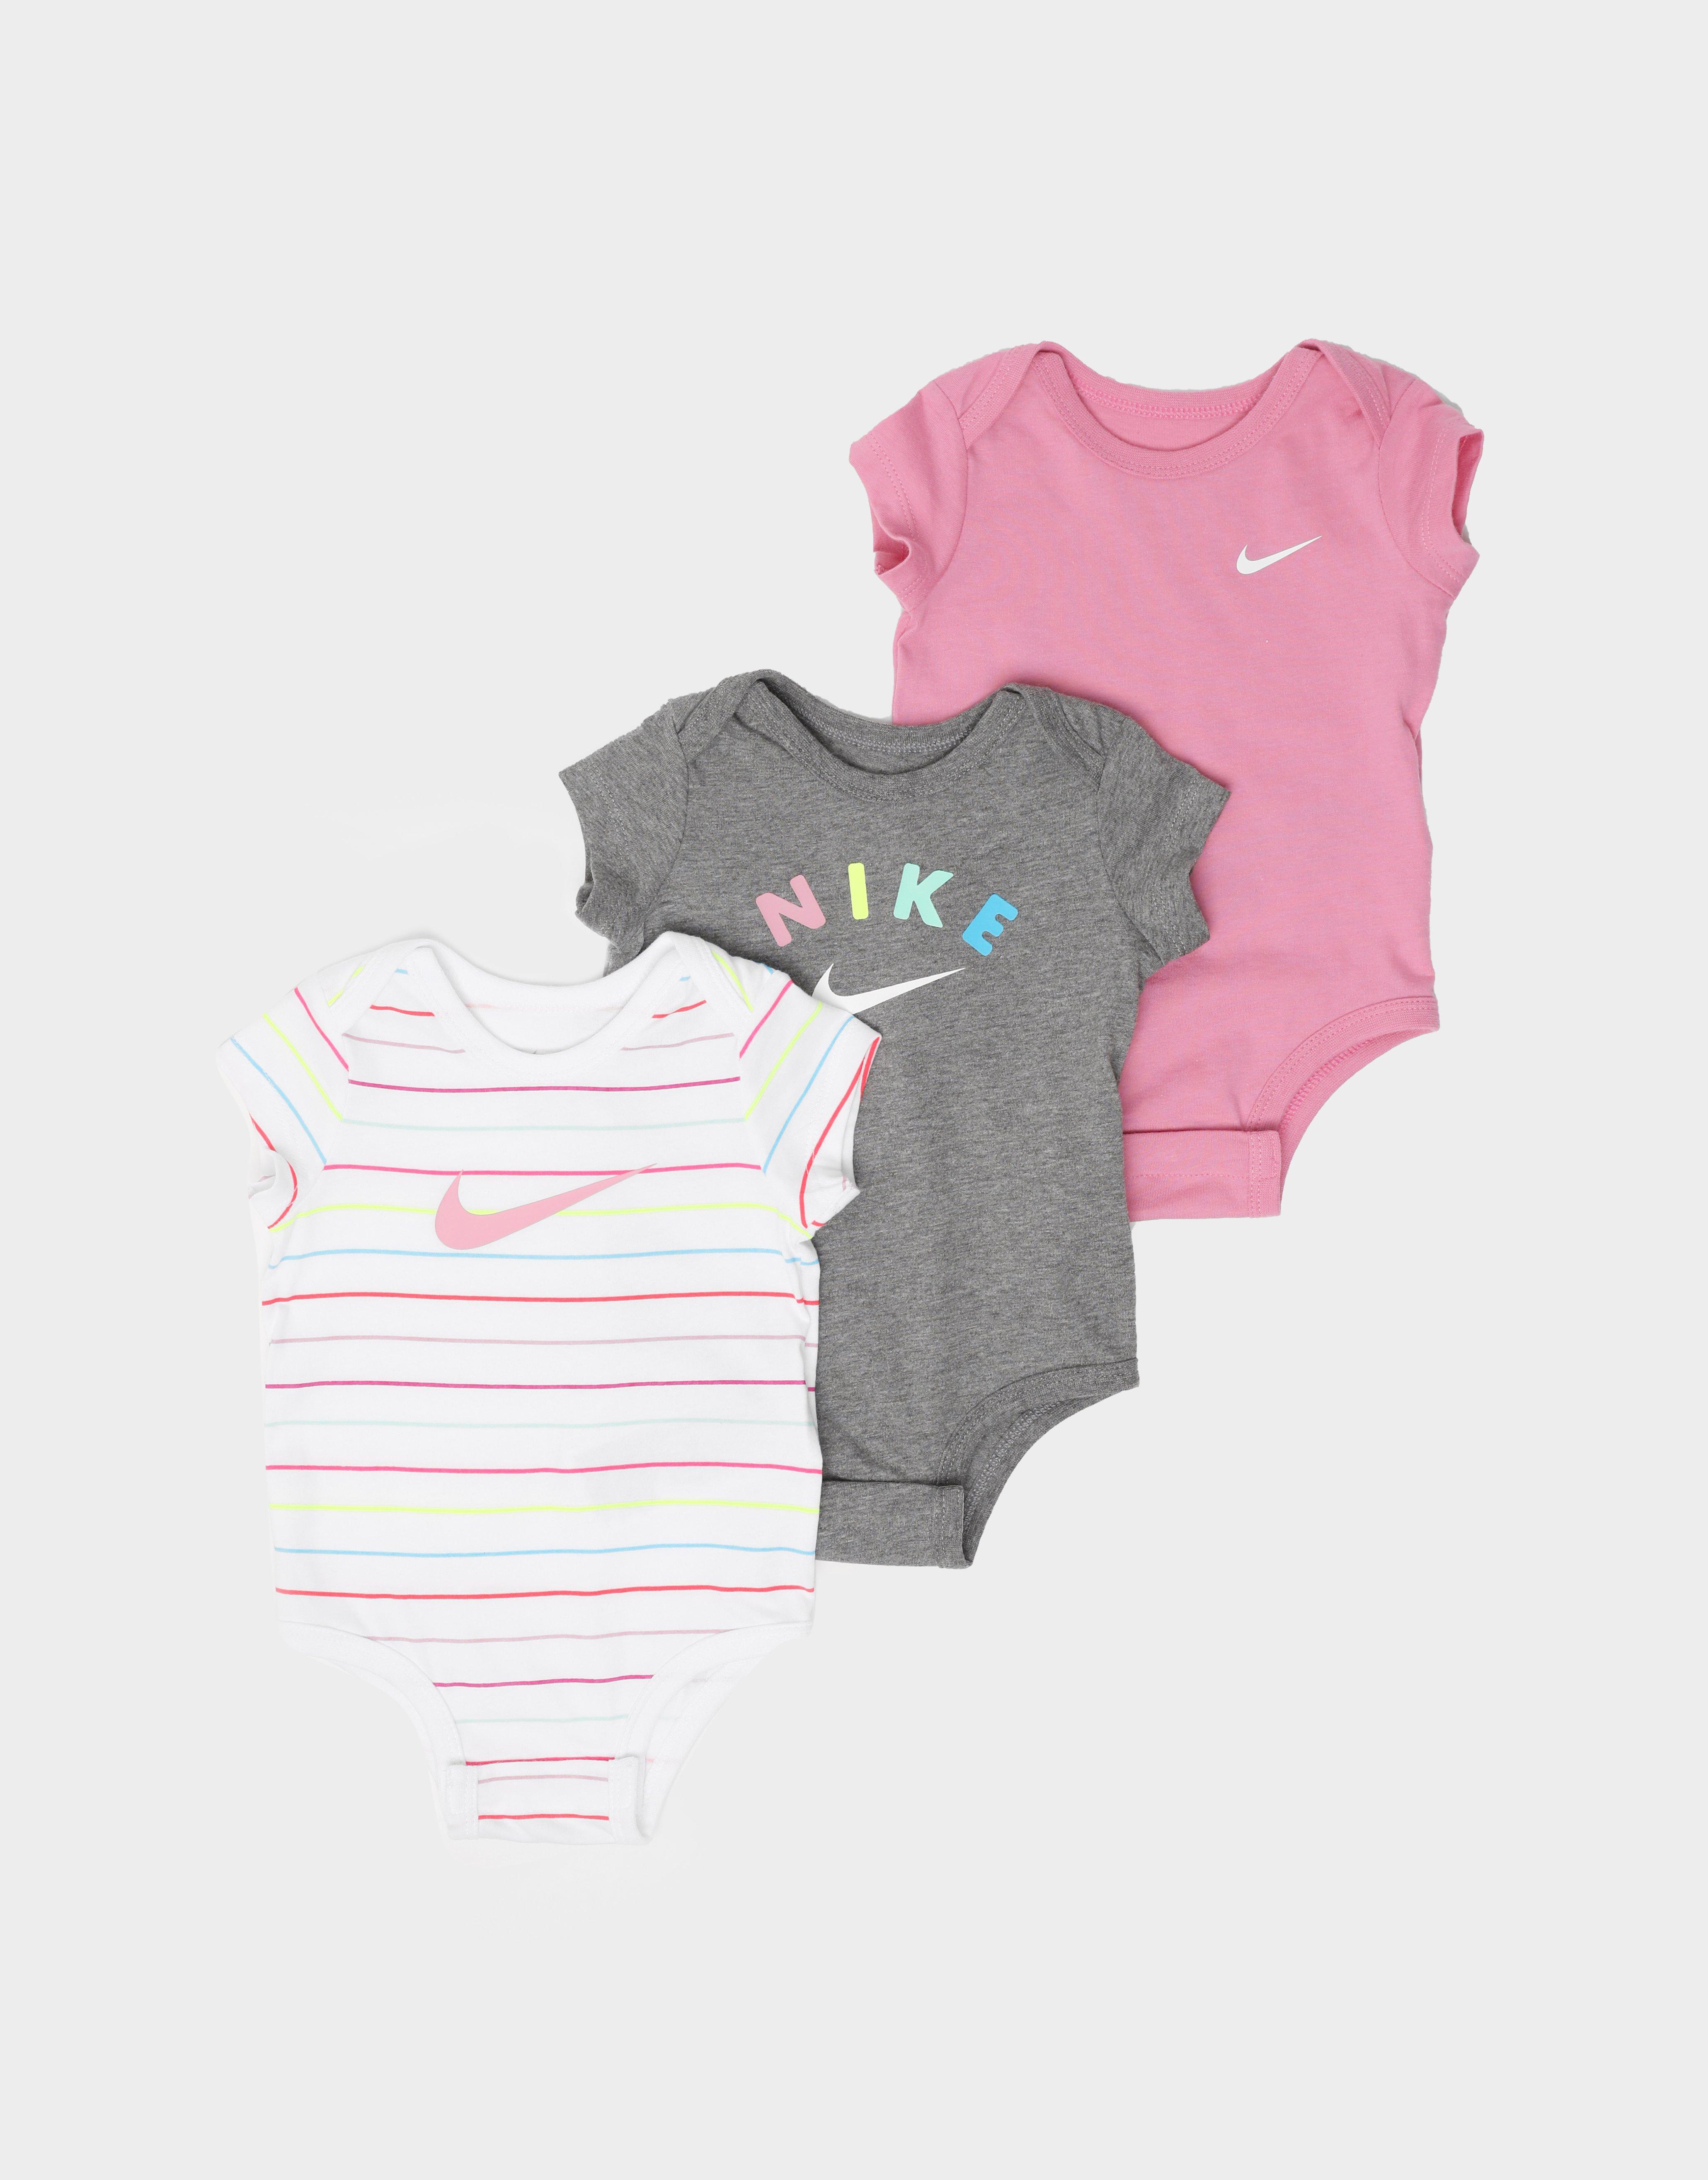 rainbow infant clothing